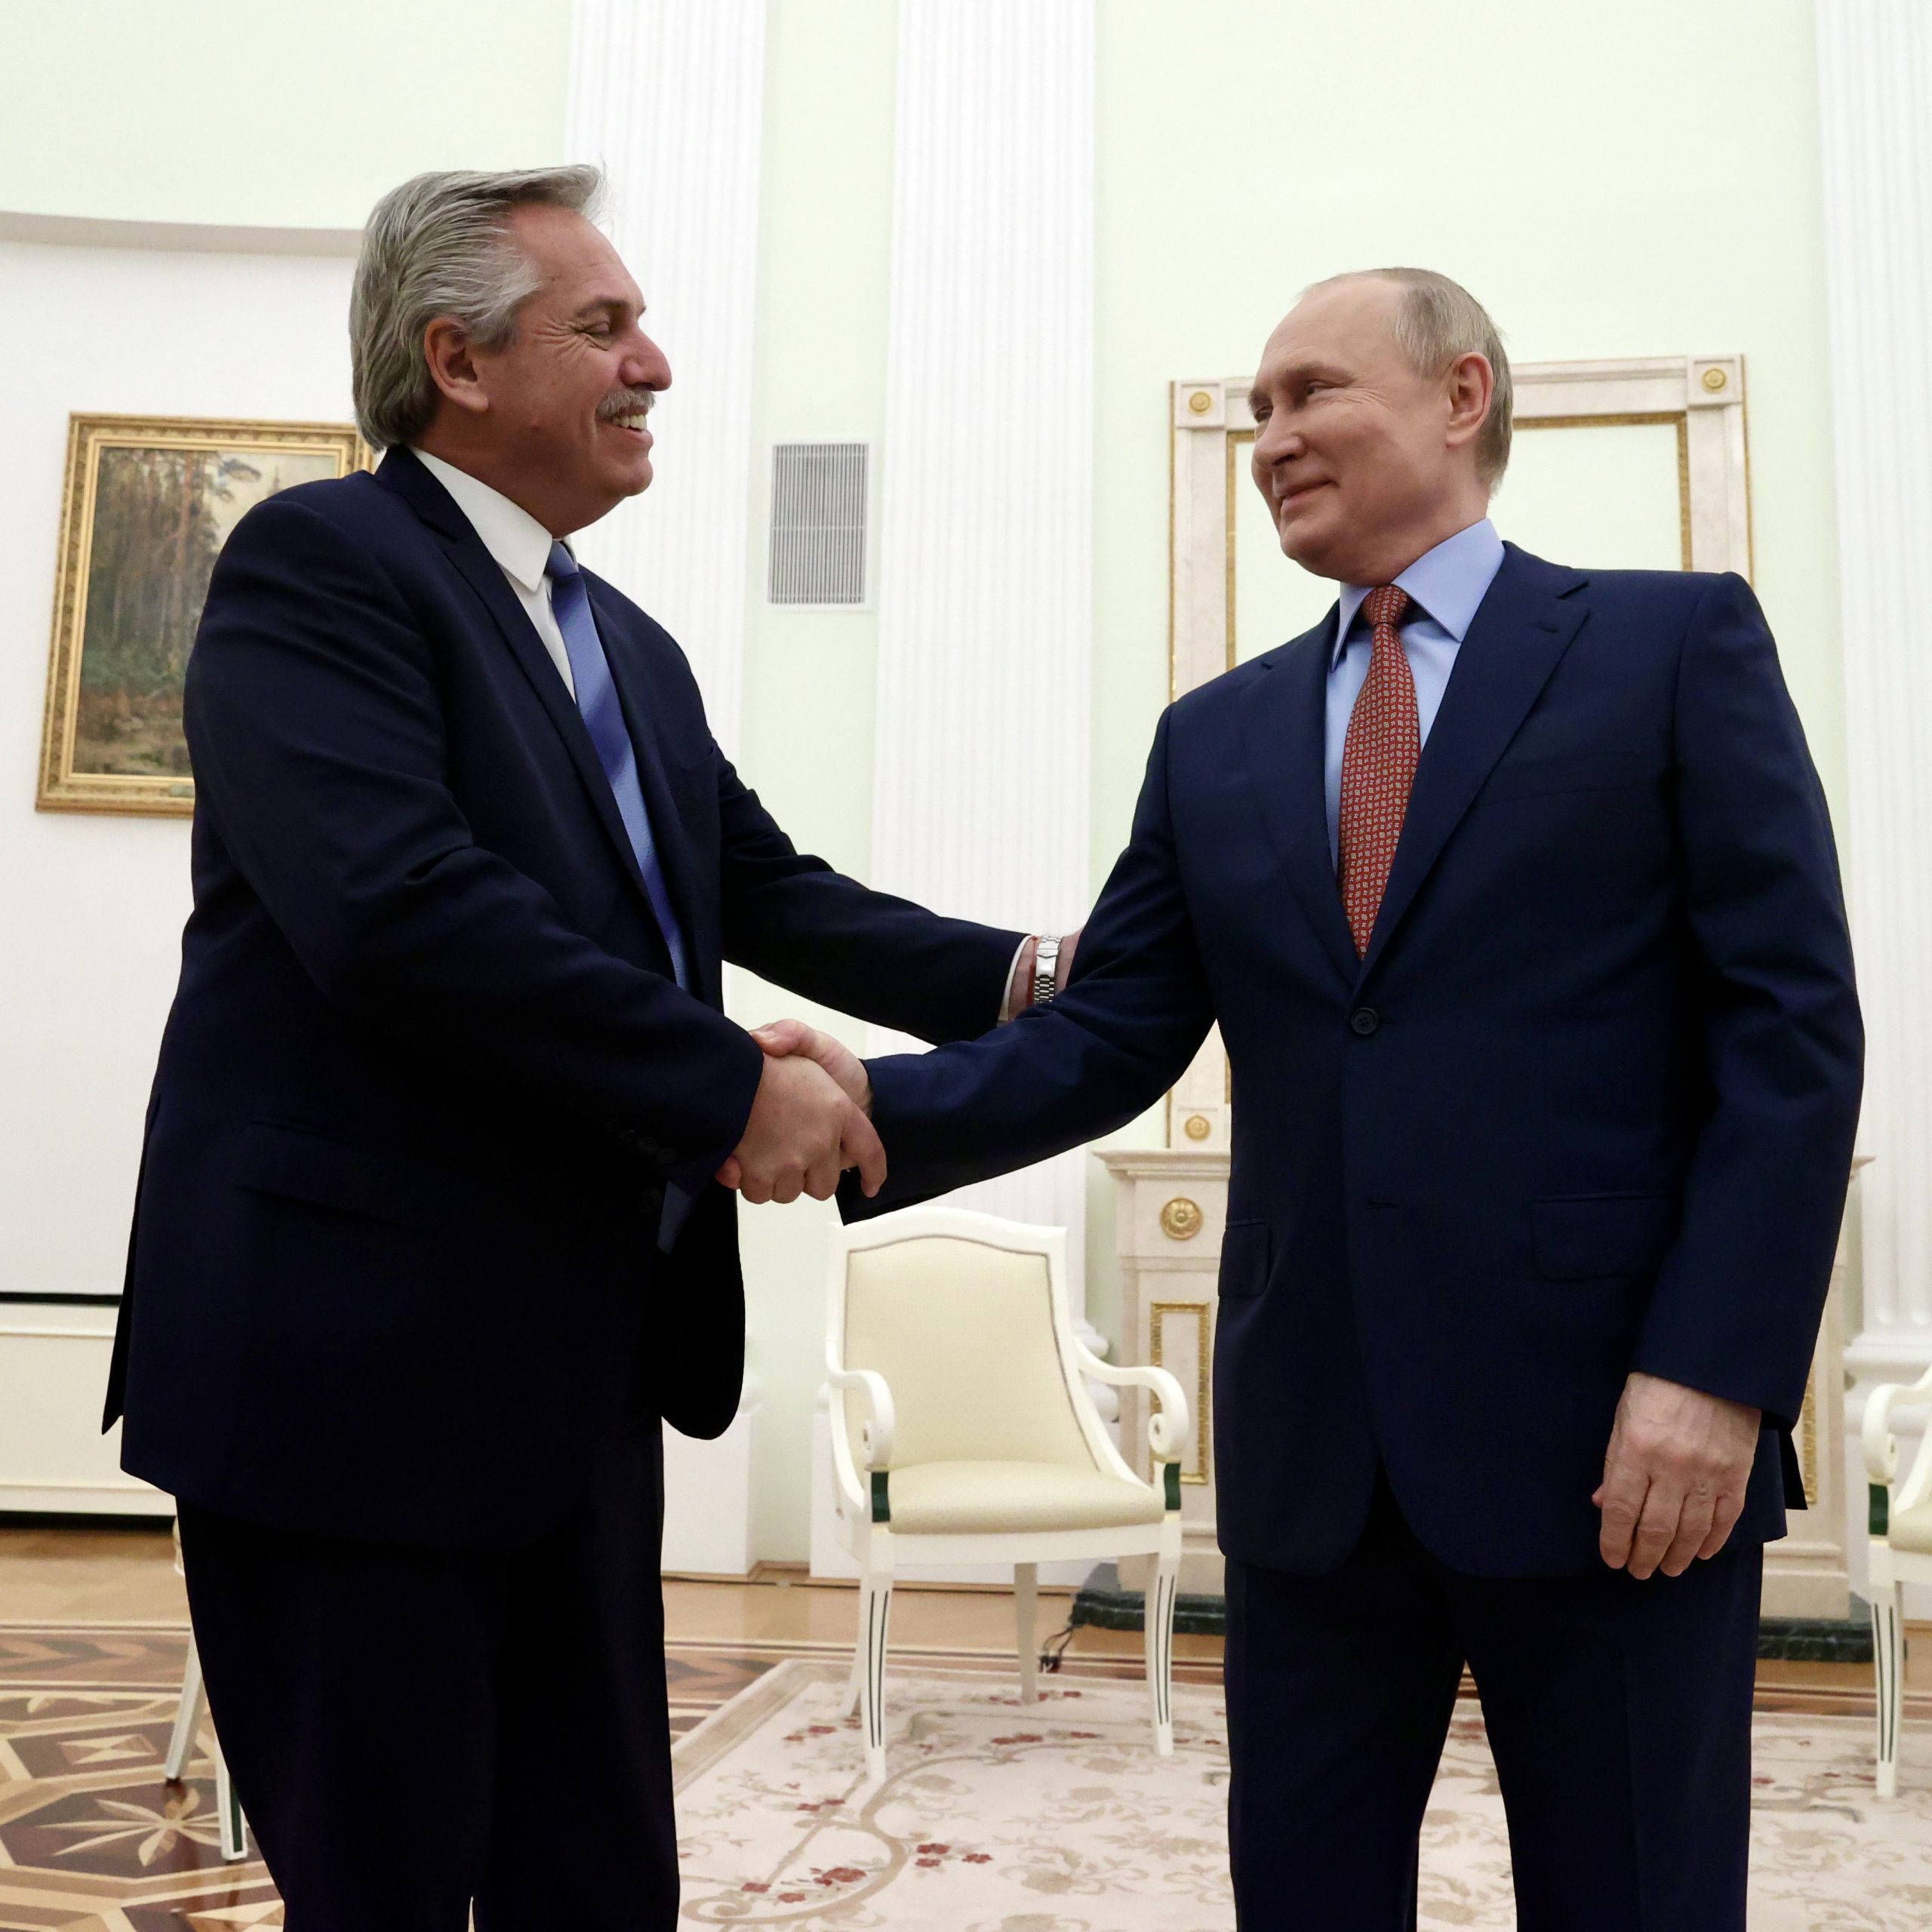 Presidente de Argentina se reunió con Putin para desprenderse de EE.UU.